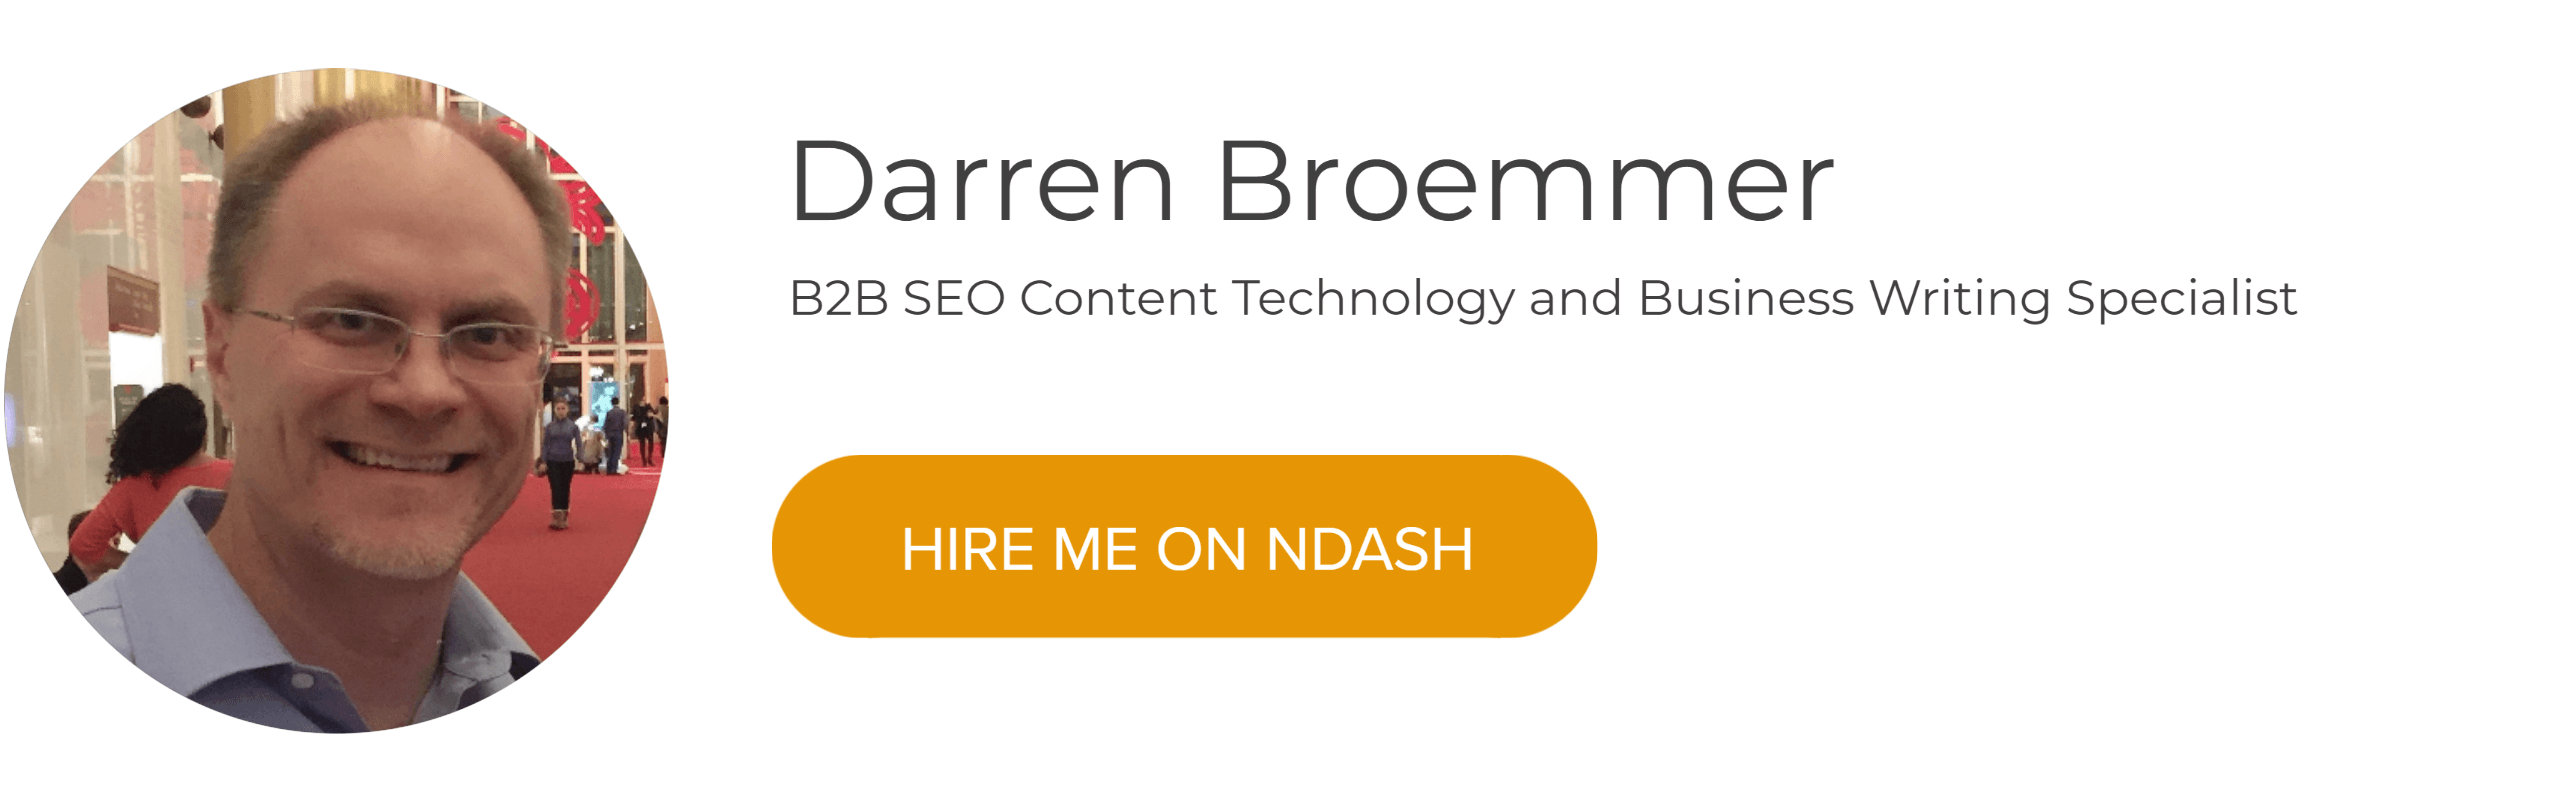 Darren Broemmer: B2B SEO Tech & Business Writer